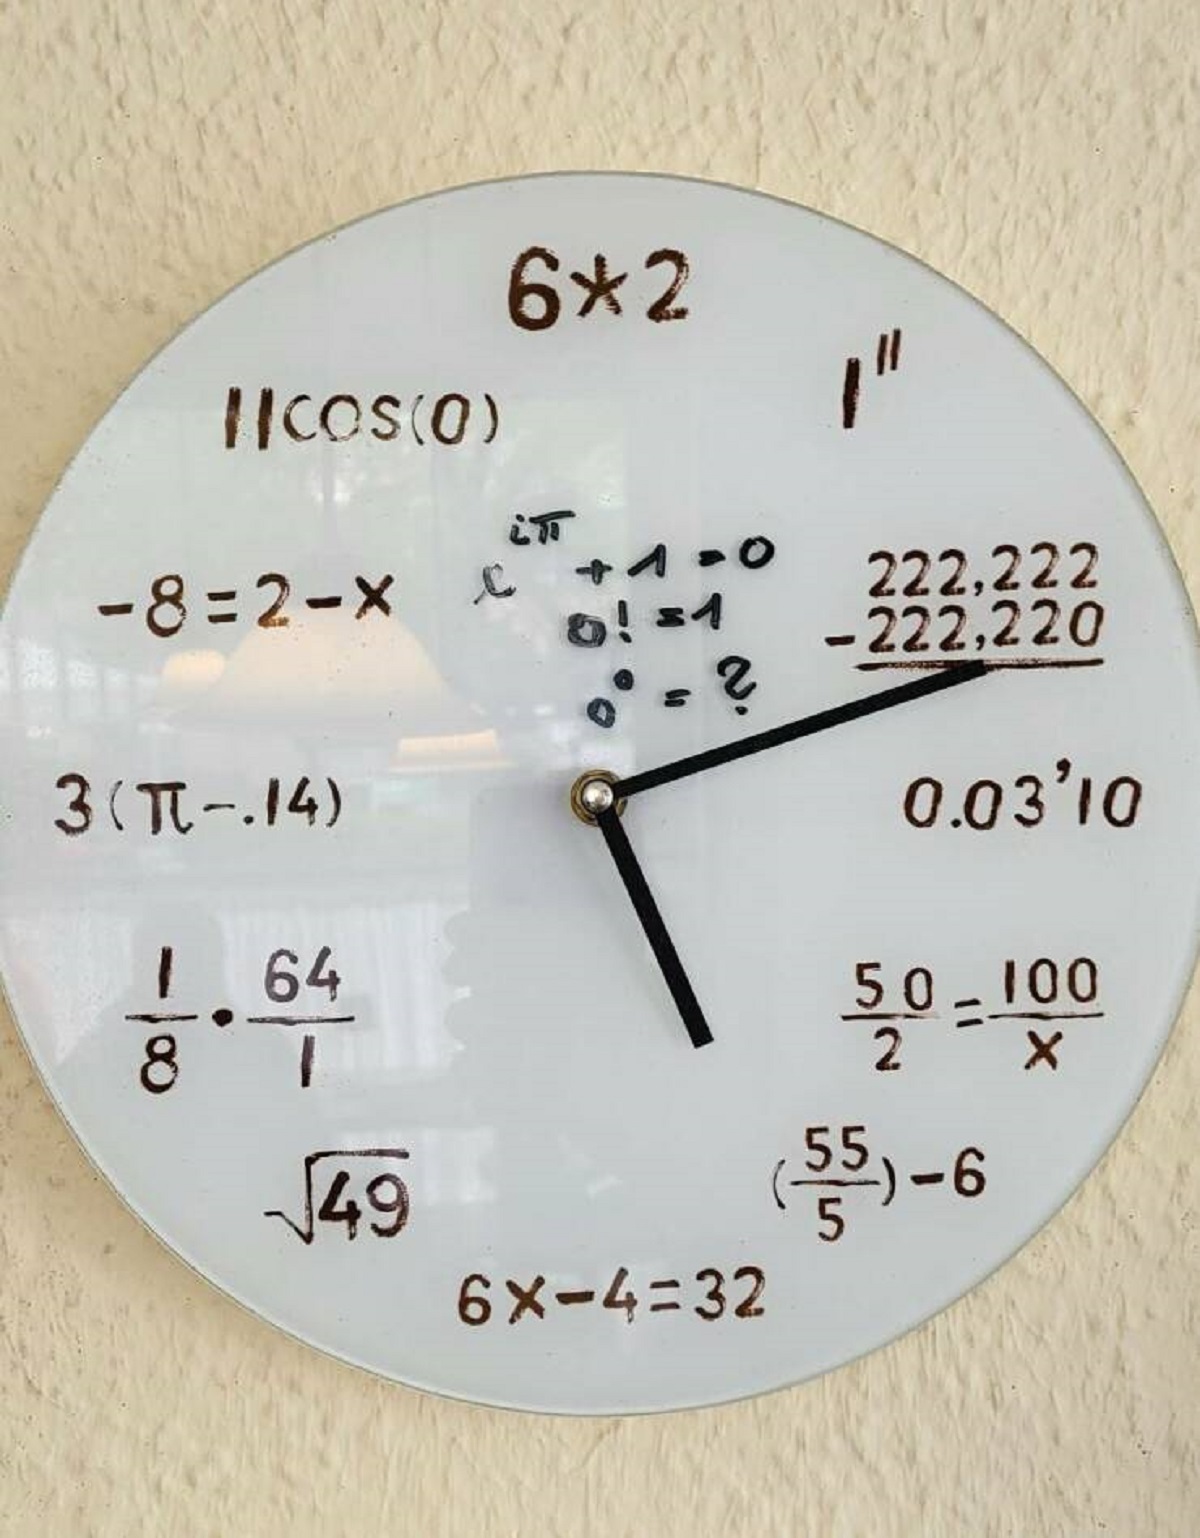 wall clock - ||Cos0 82x x 62 3.14 1.644 49 "" Ltt 100 0! 1 ? 222,222 222,220 6X432 0.03'10 500 50100 2 556